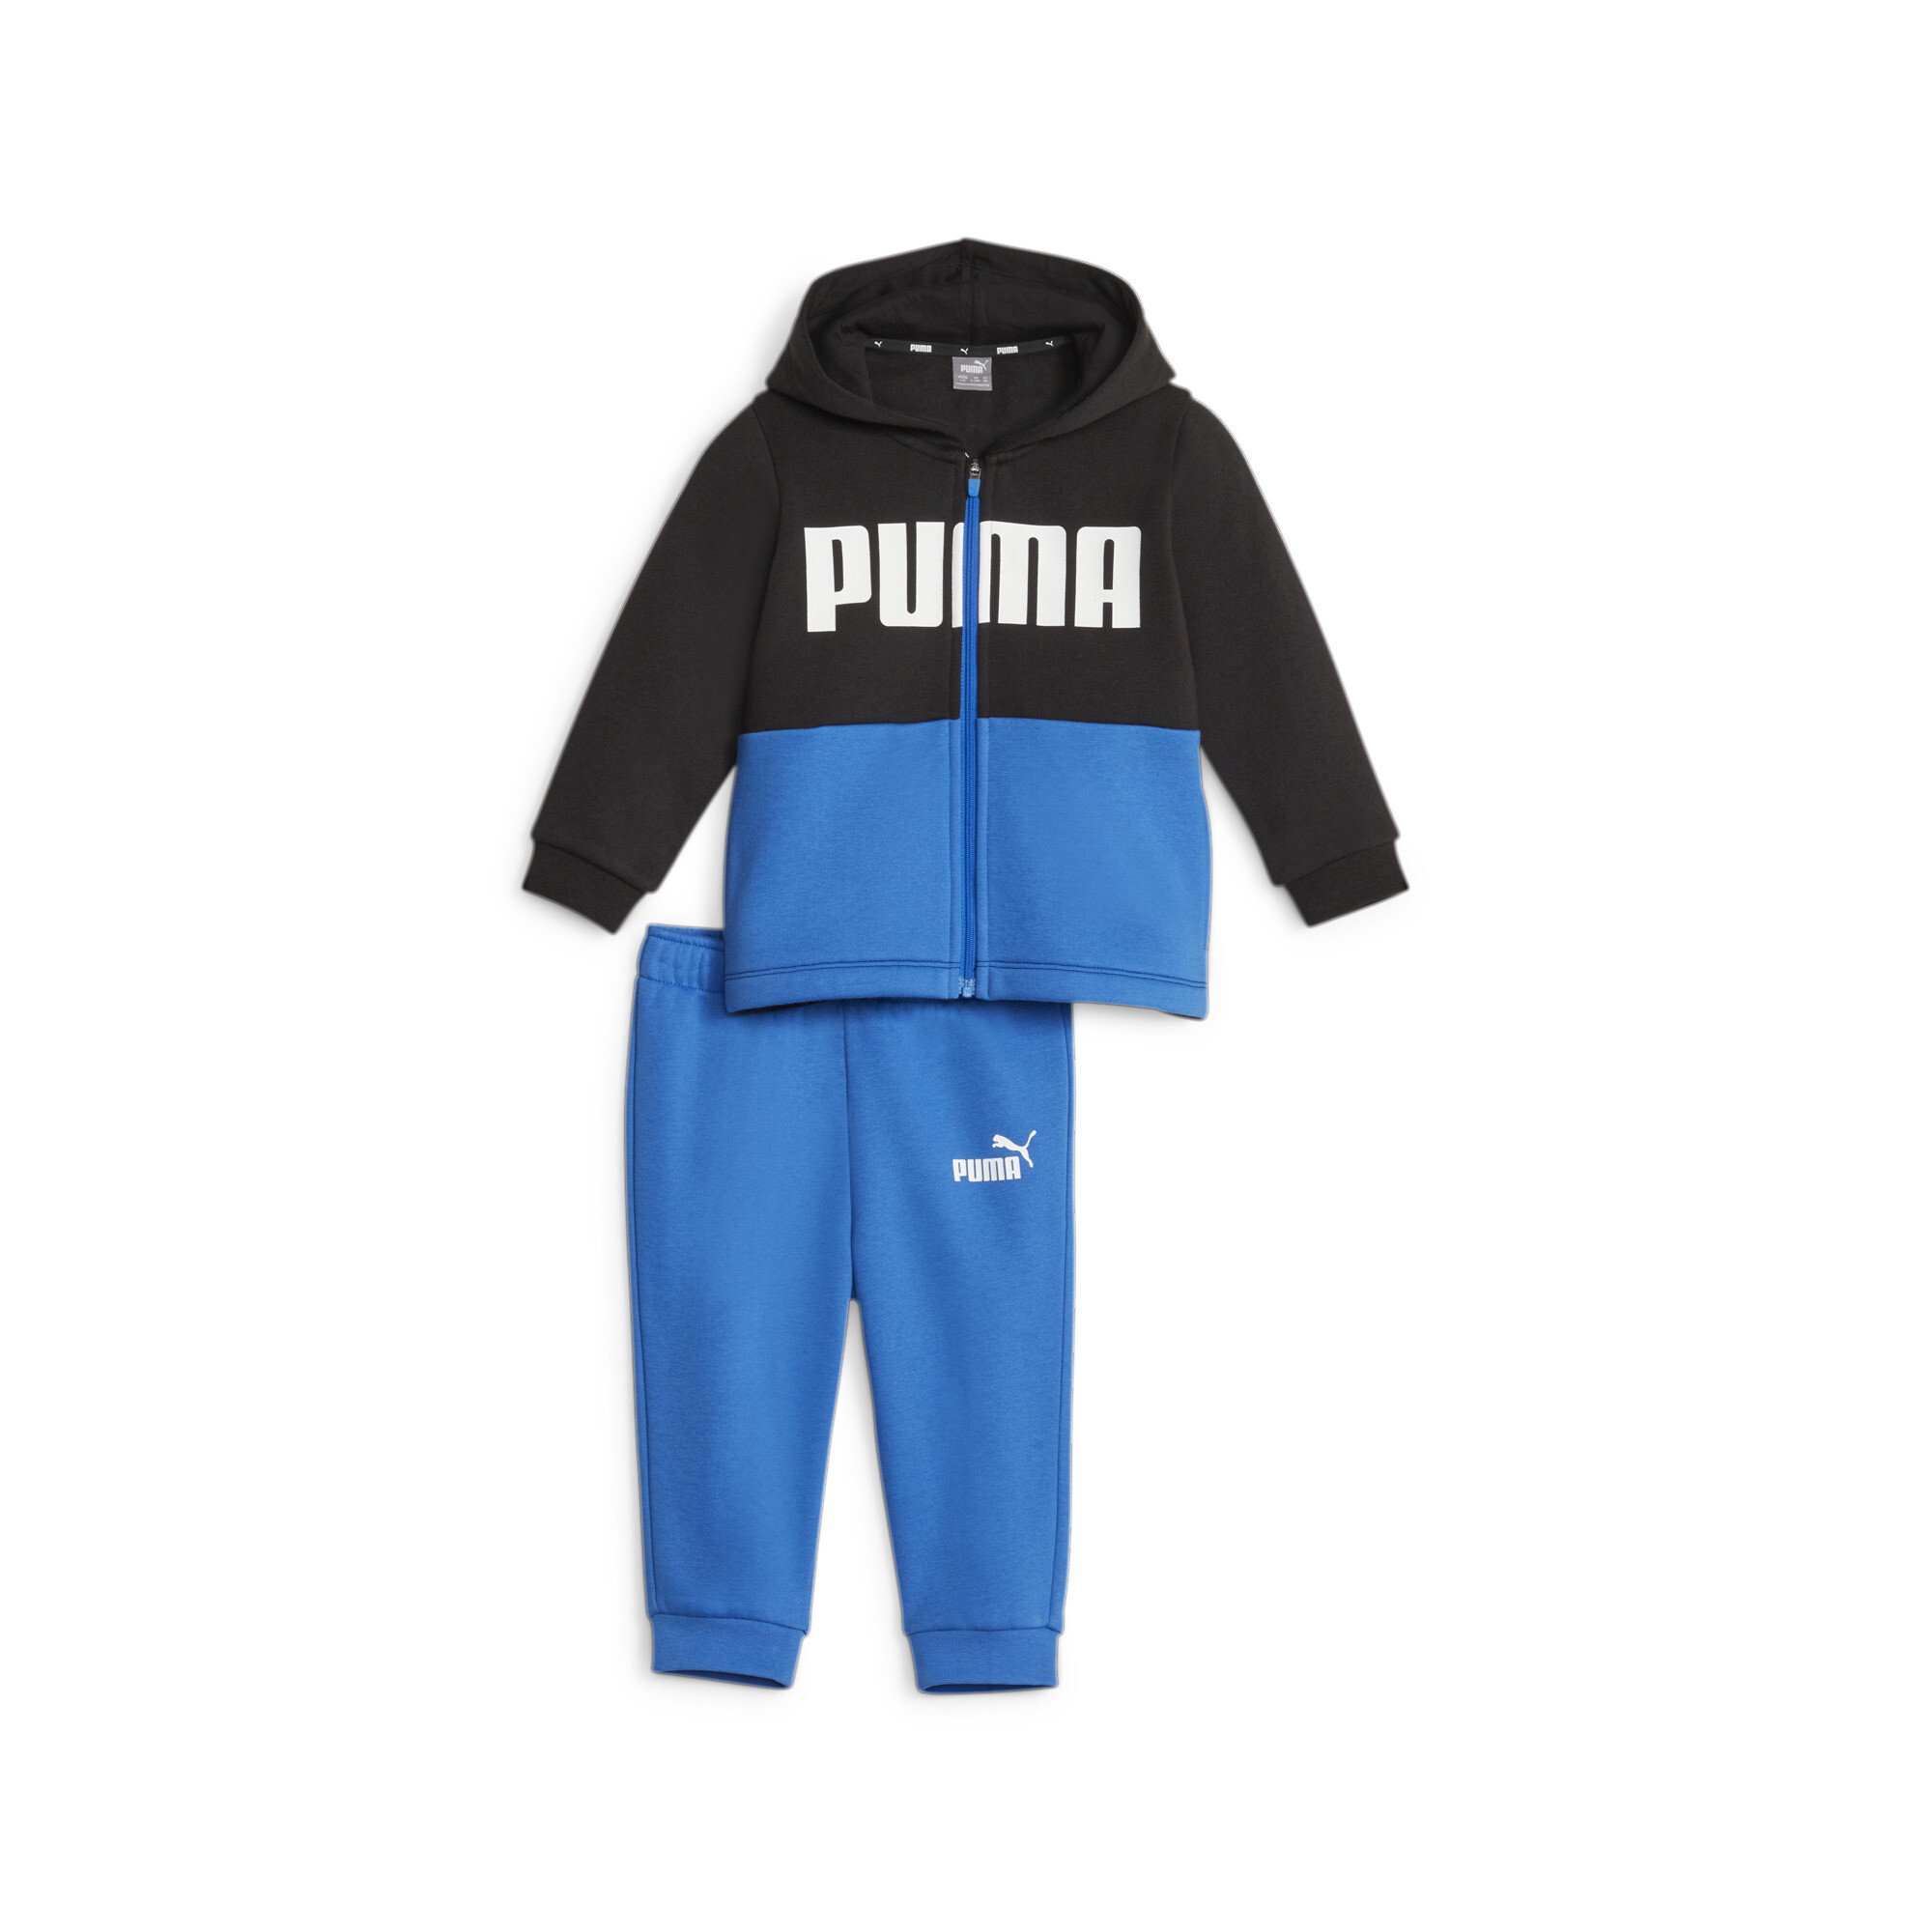 PUMA Minicats Colourblock Jogger Suit Babies In Blue, Size 6-9 Months